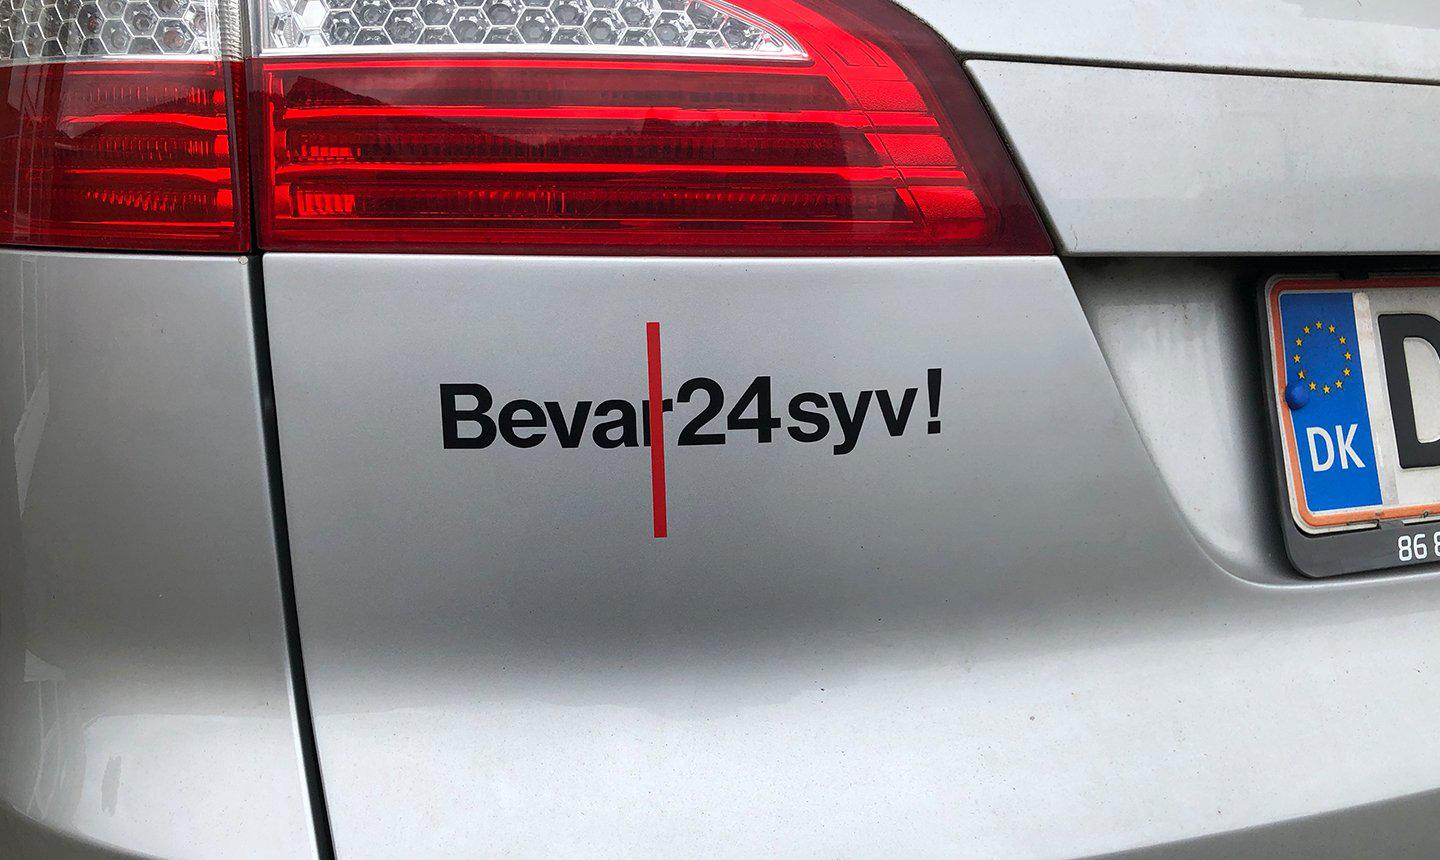 Bevar 24syv - make it stick